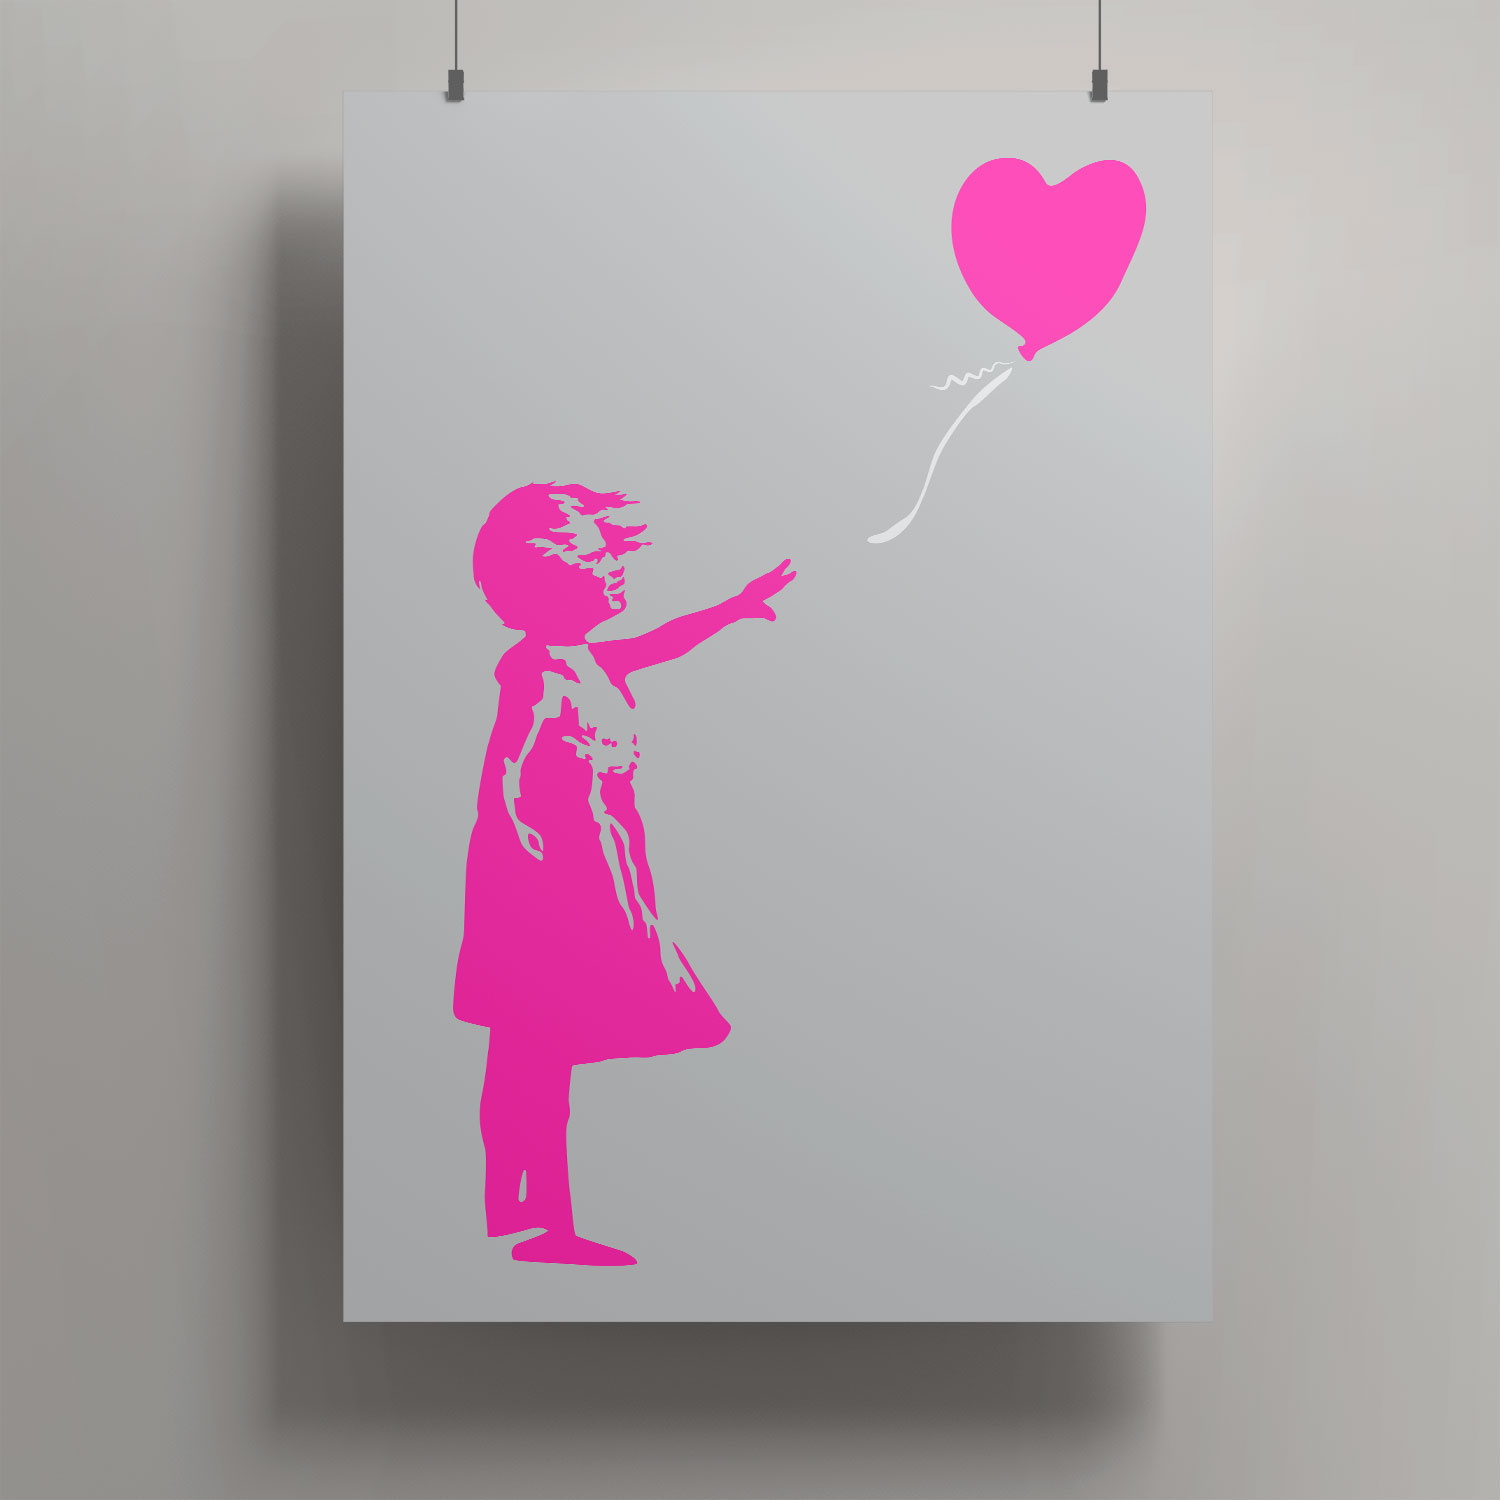 Artprint A3 - pink girl and heart